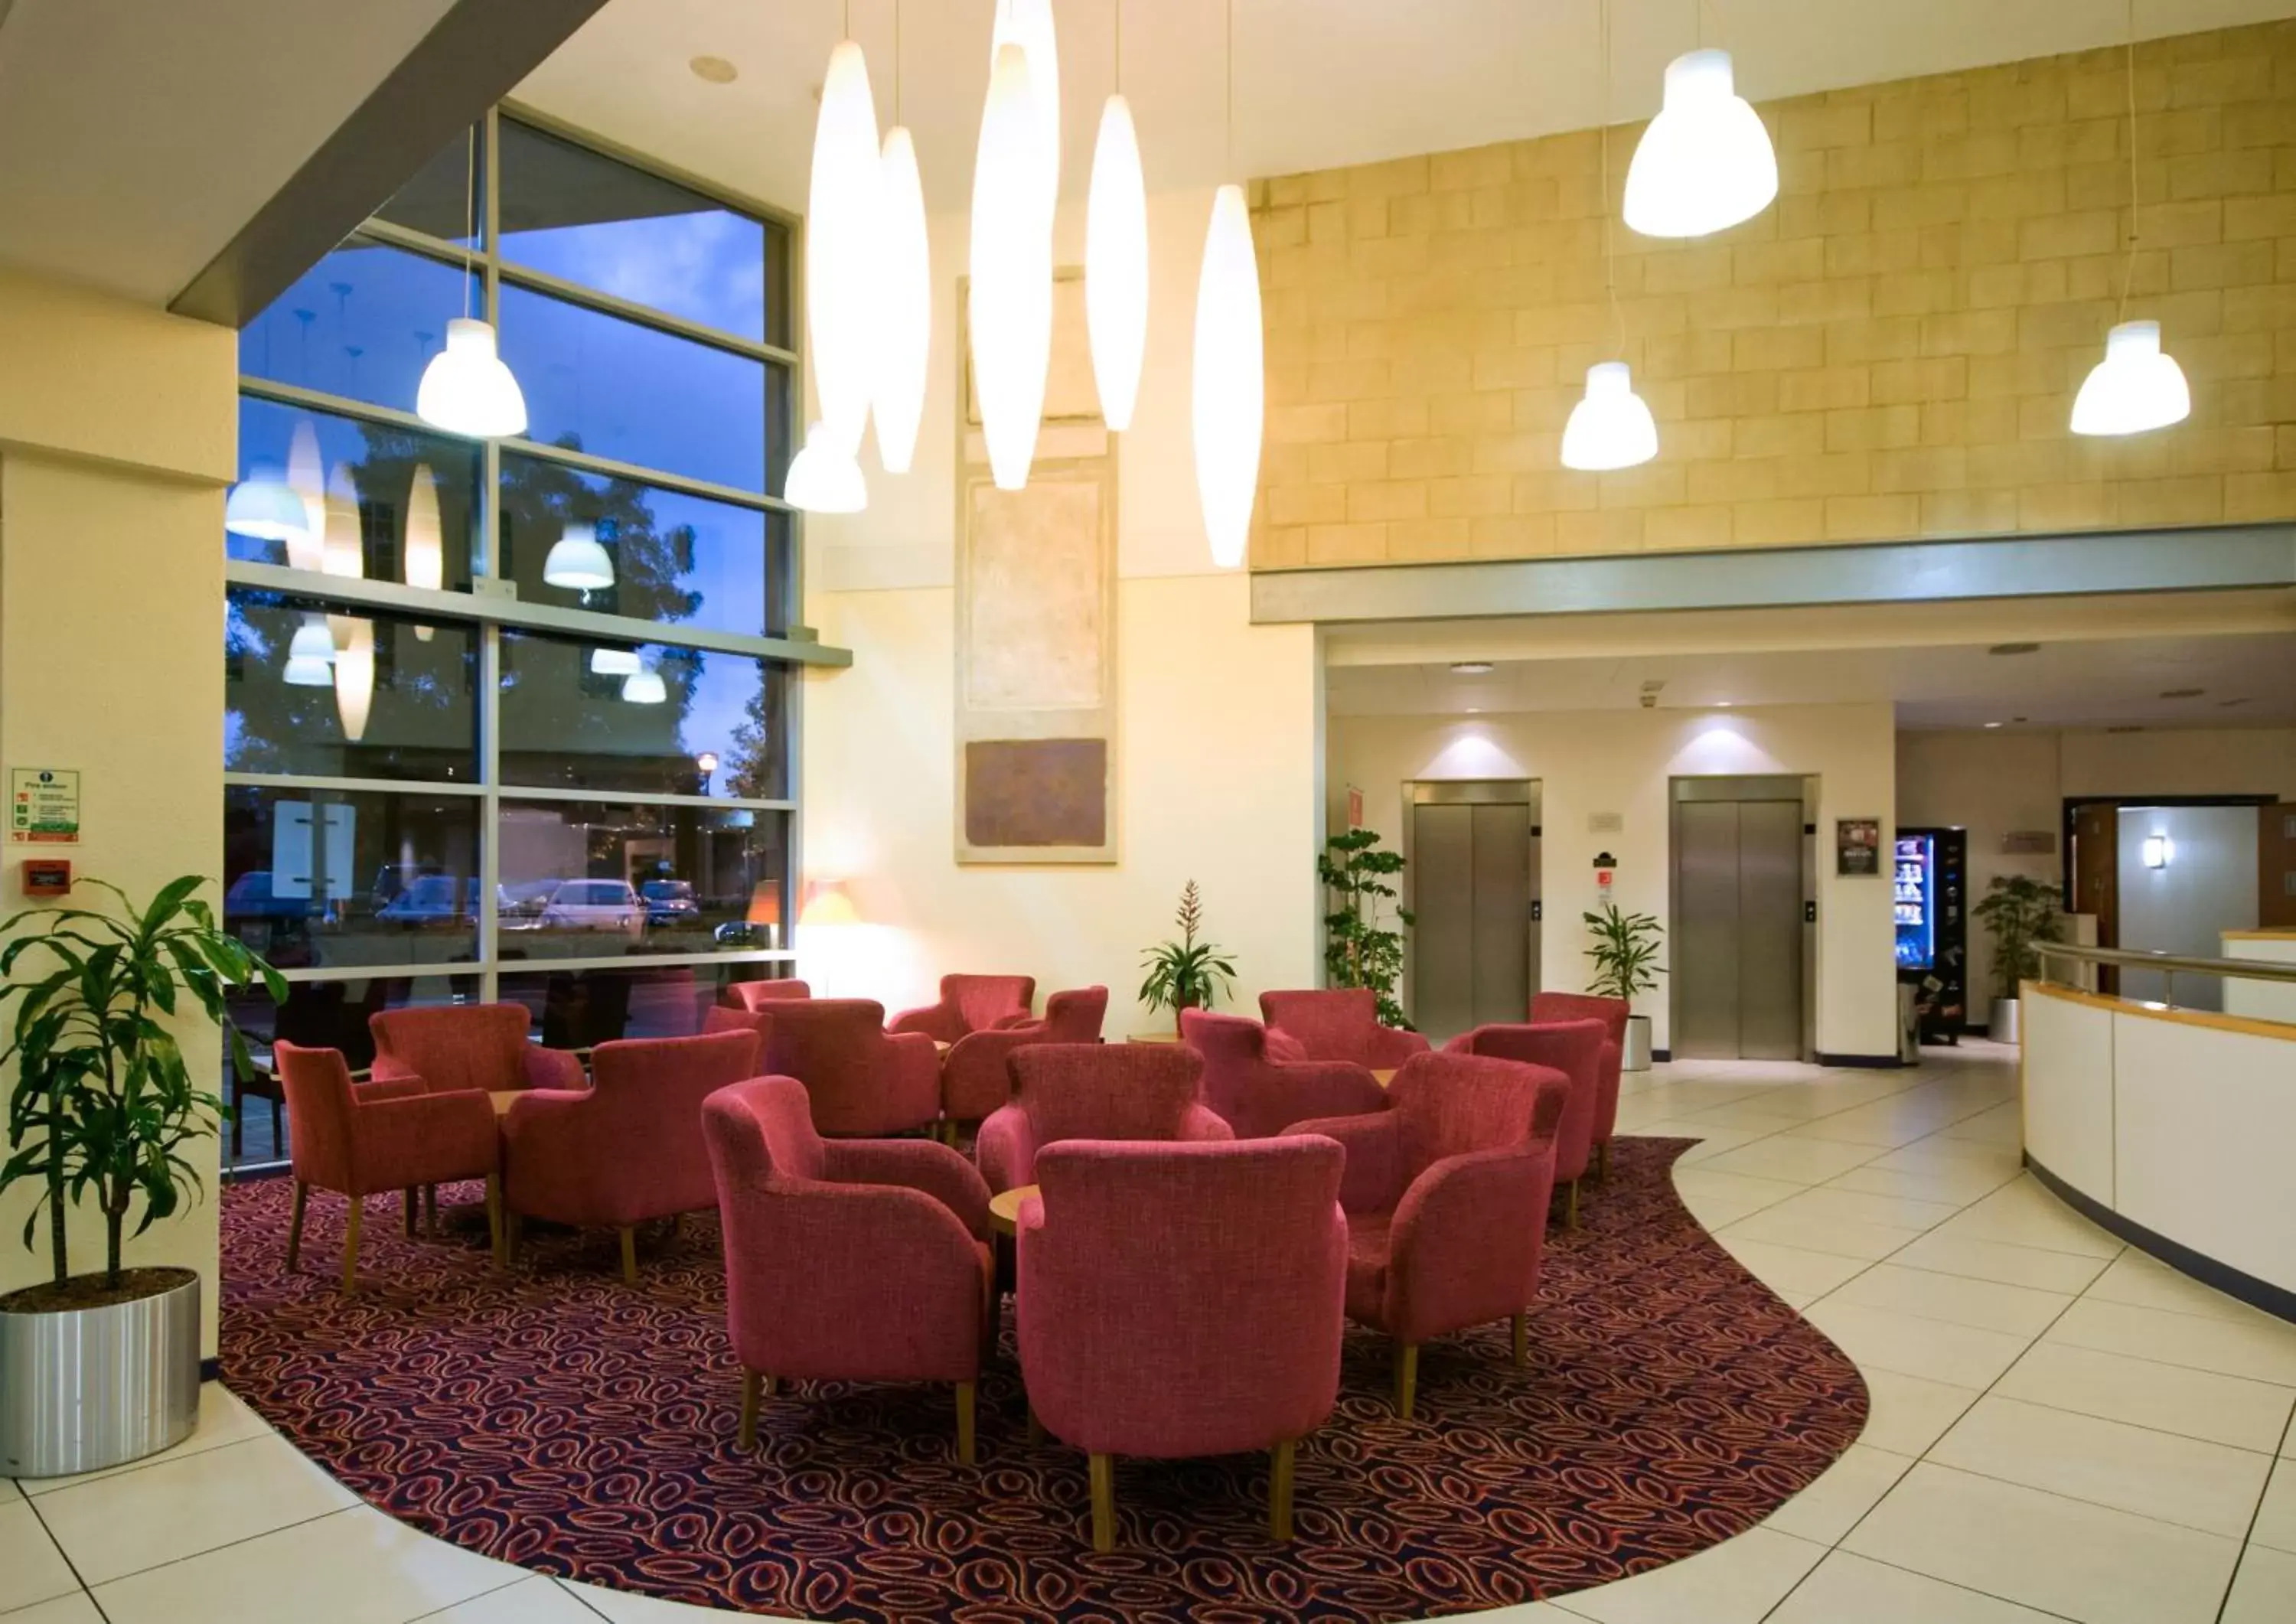 Lobby or reception, Lobby/Reception in Ramada London North